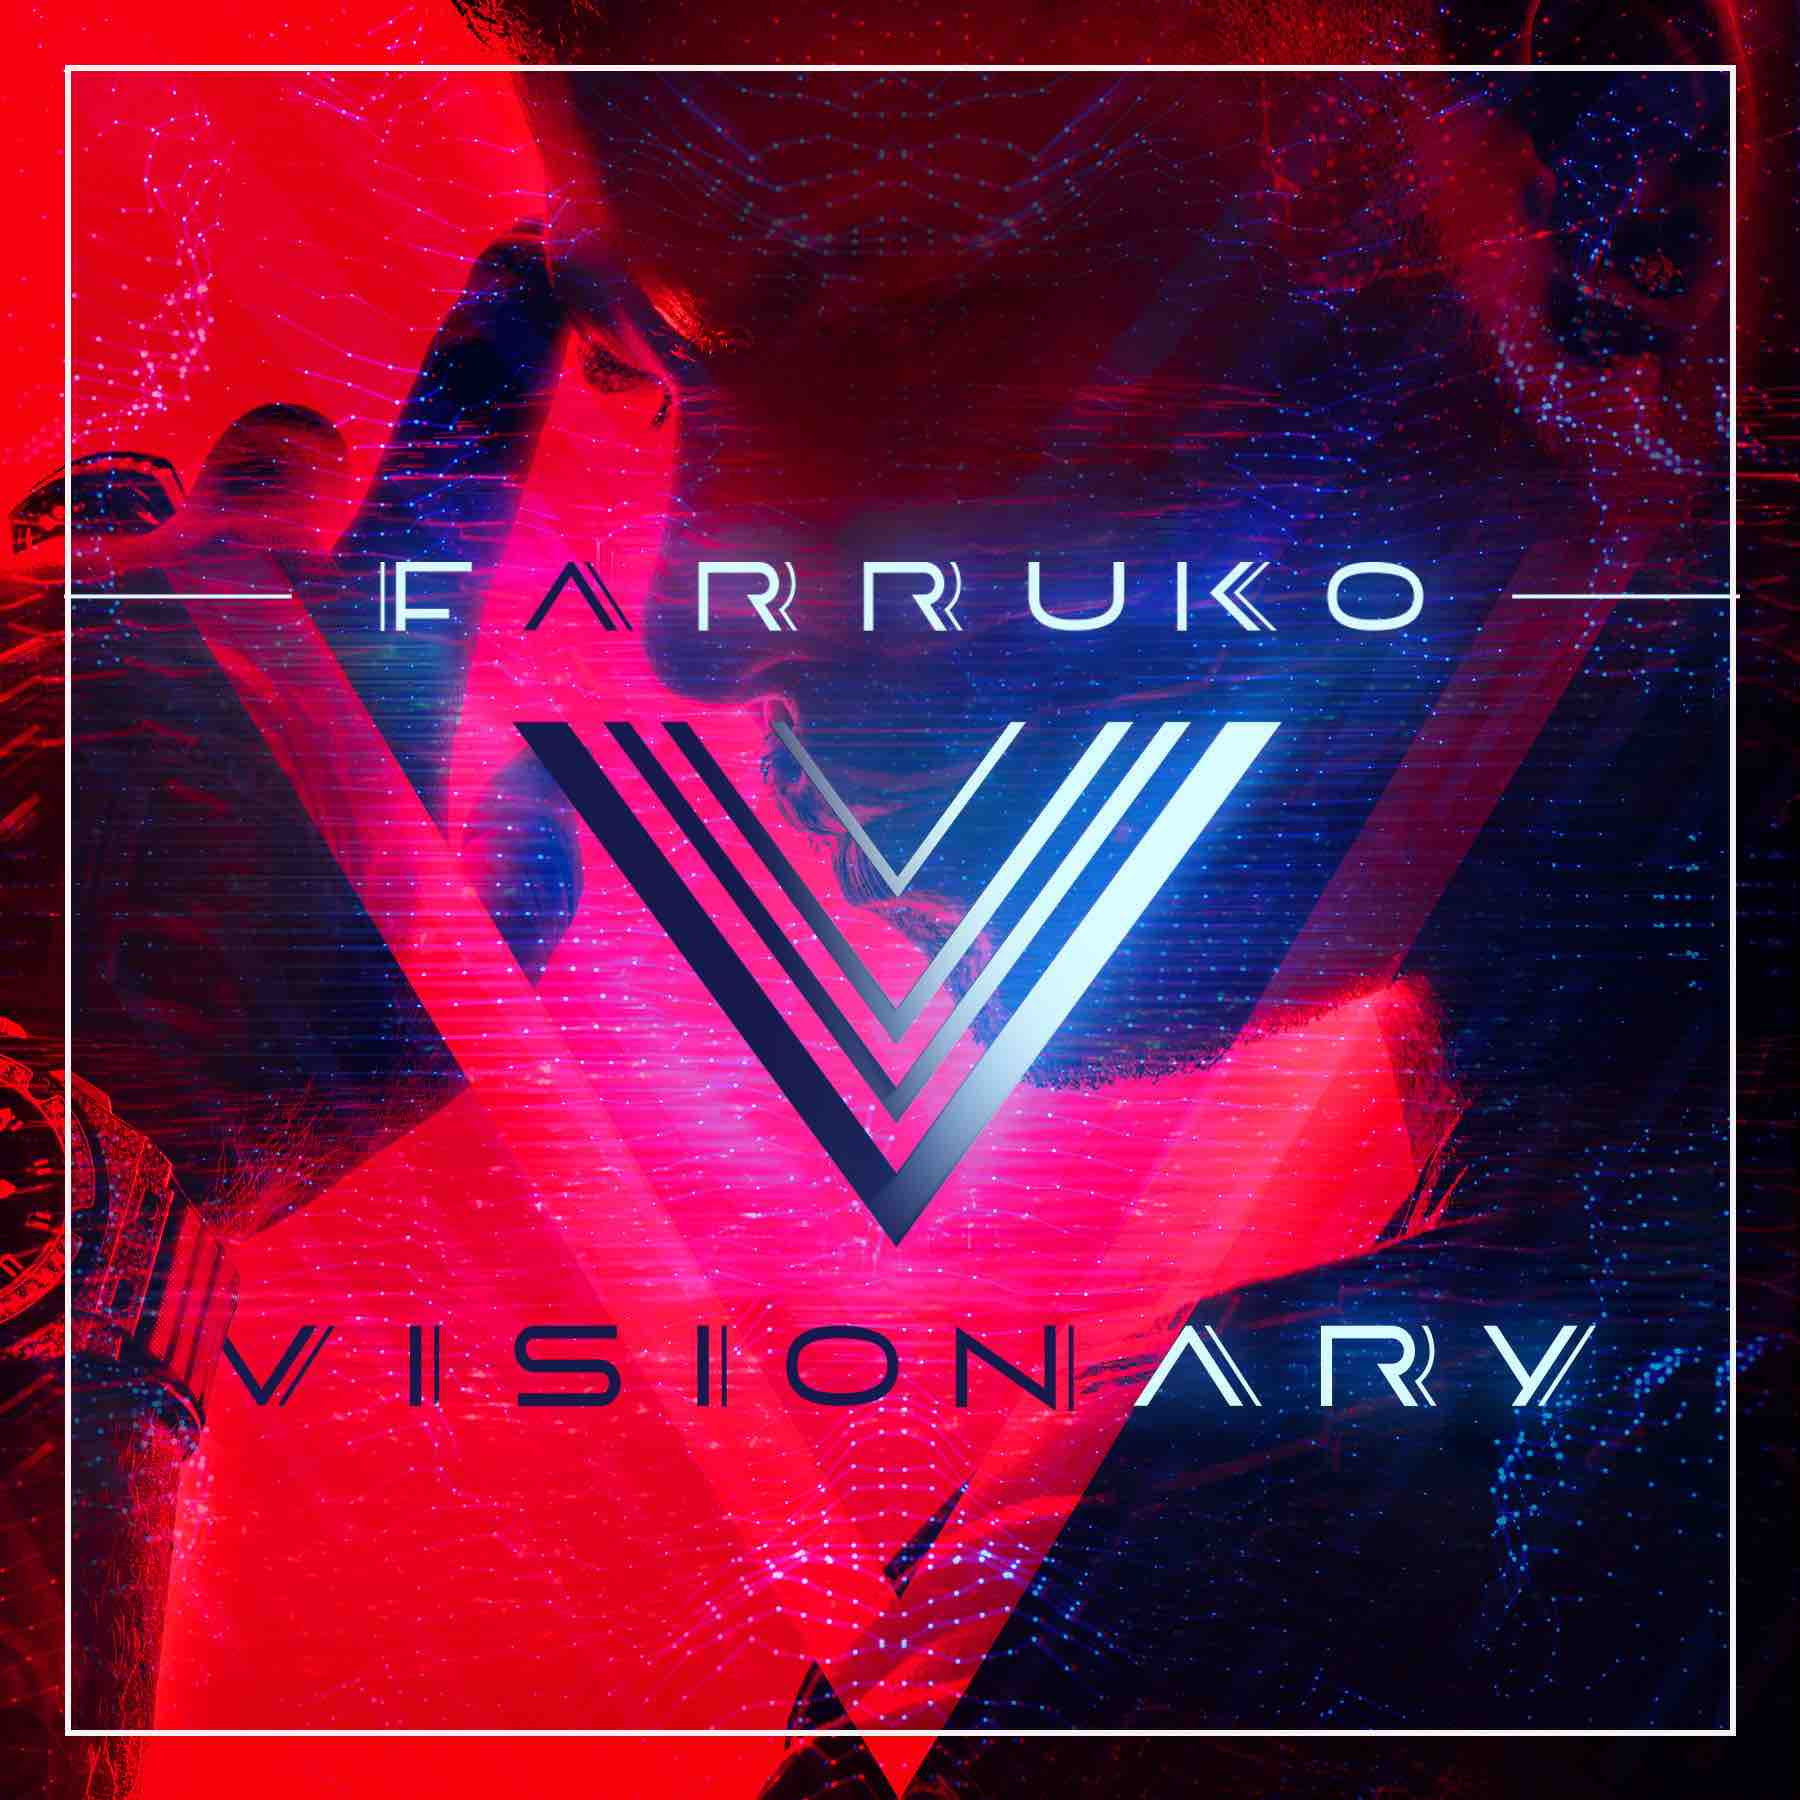 FARRUKO continua ejerciendo su visión de llevar su música alrededor del mundo con VISIONARY WORLD TOUR // FARRUKO continues executing his vision of taking his music worldwide with VISIONARY WORLD TOUR